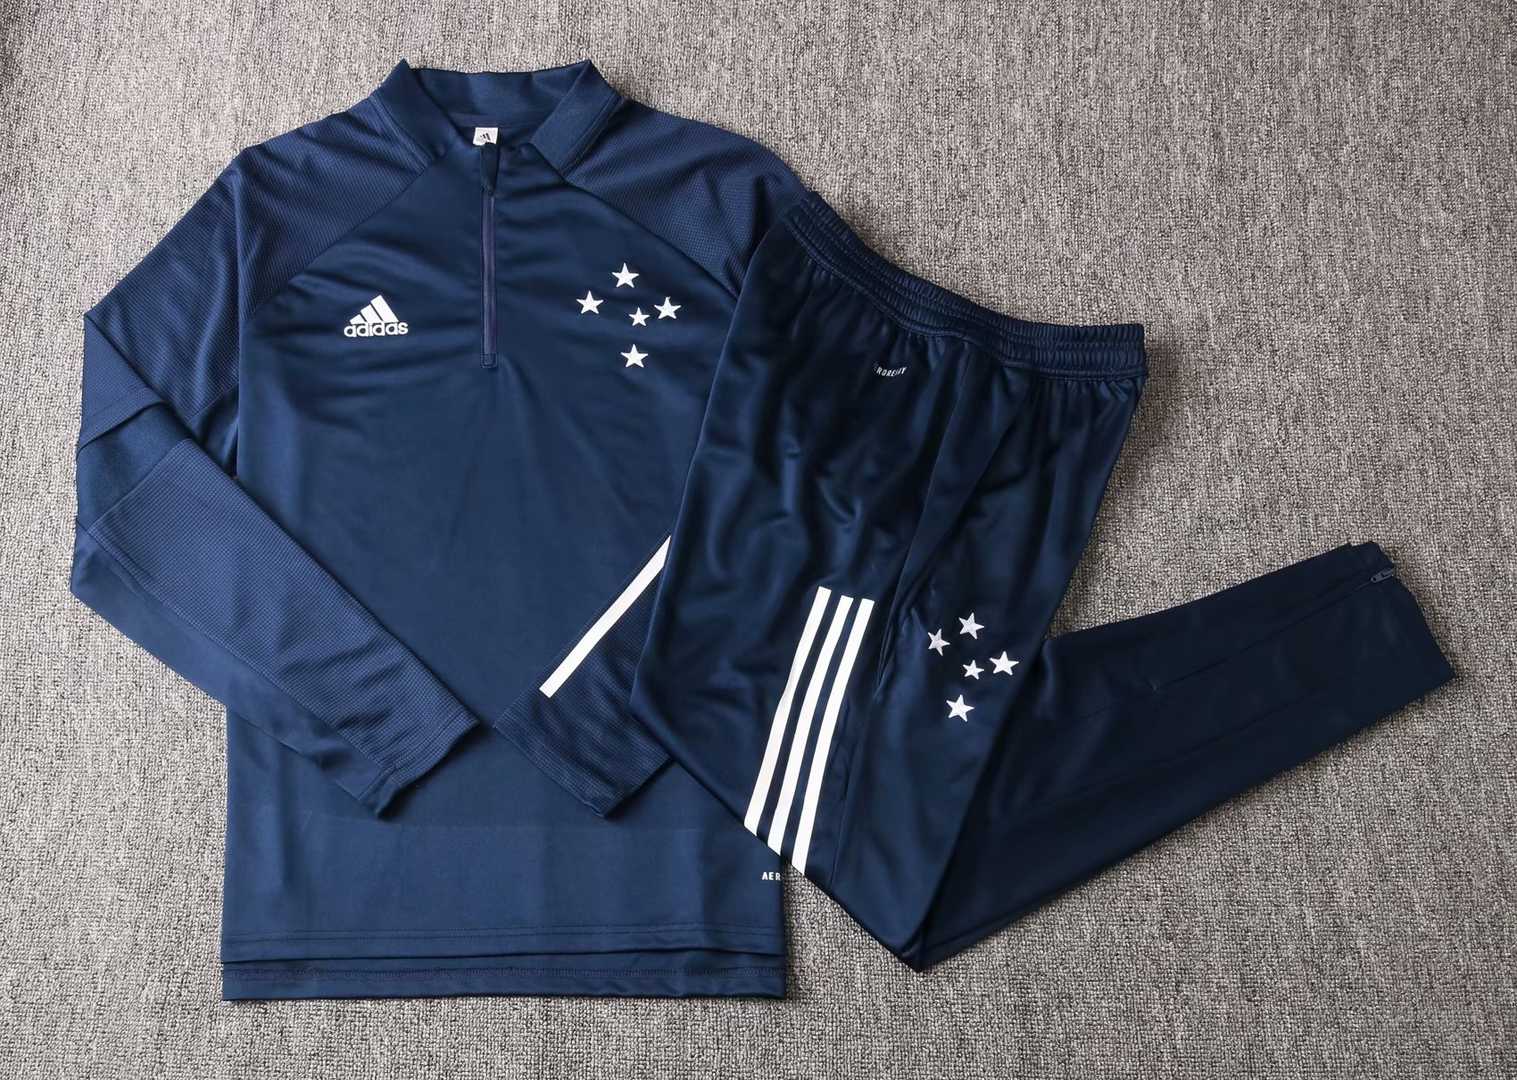 2020/21 Cruzeiro Navy Half Zip Mens Soccer Training Suit(SweatJersey + Pants)